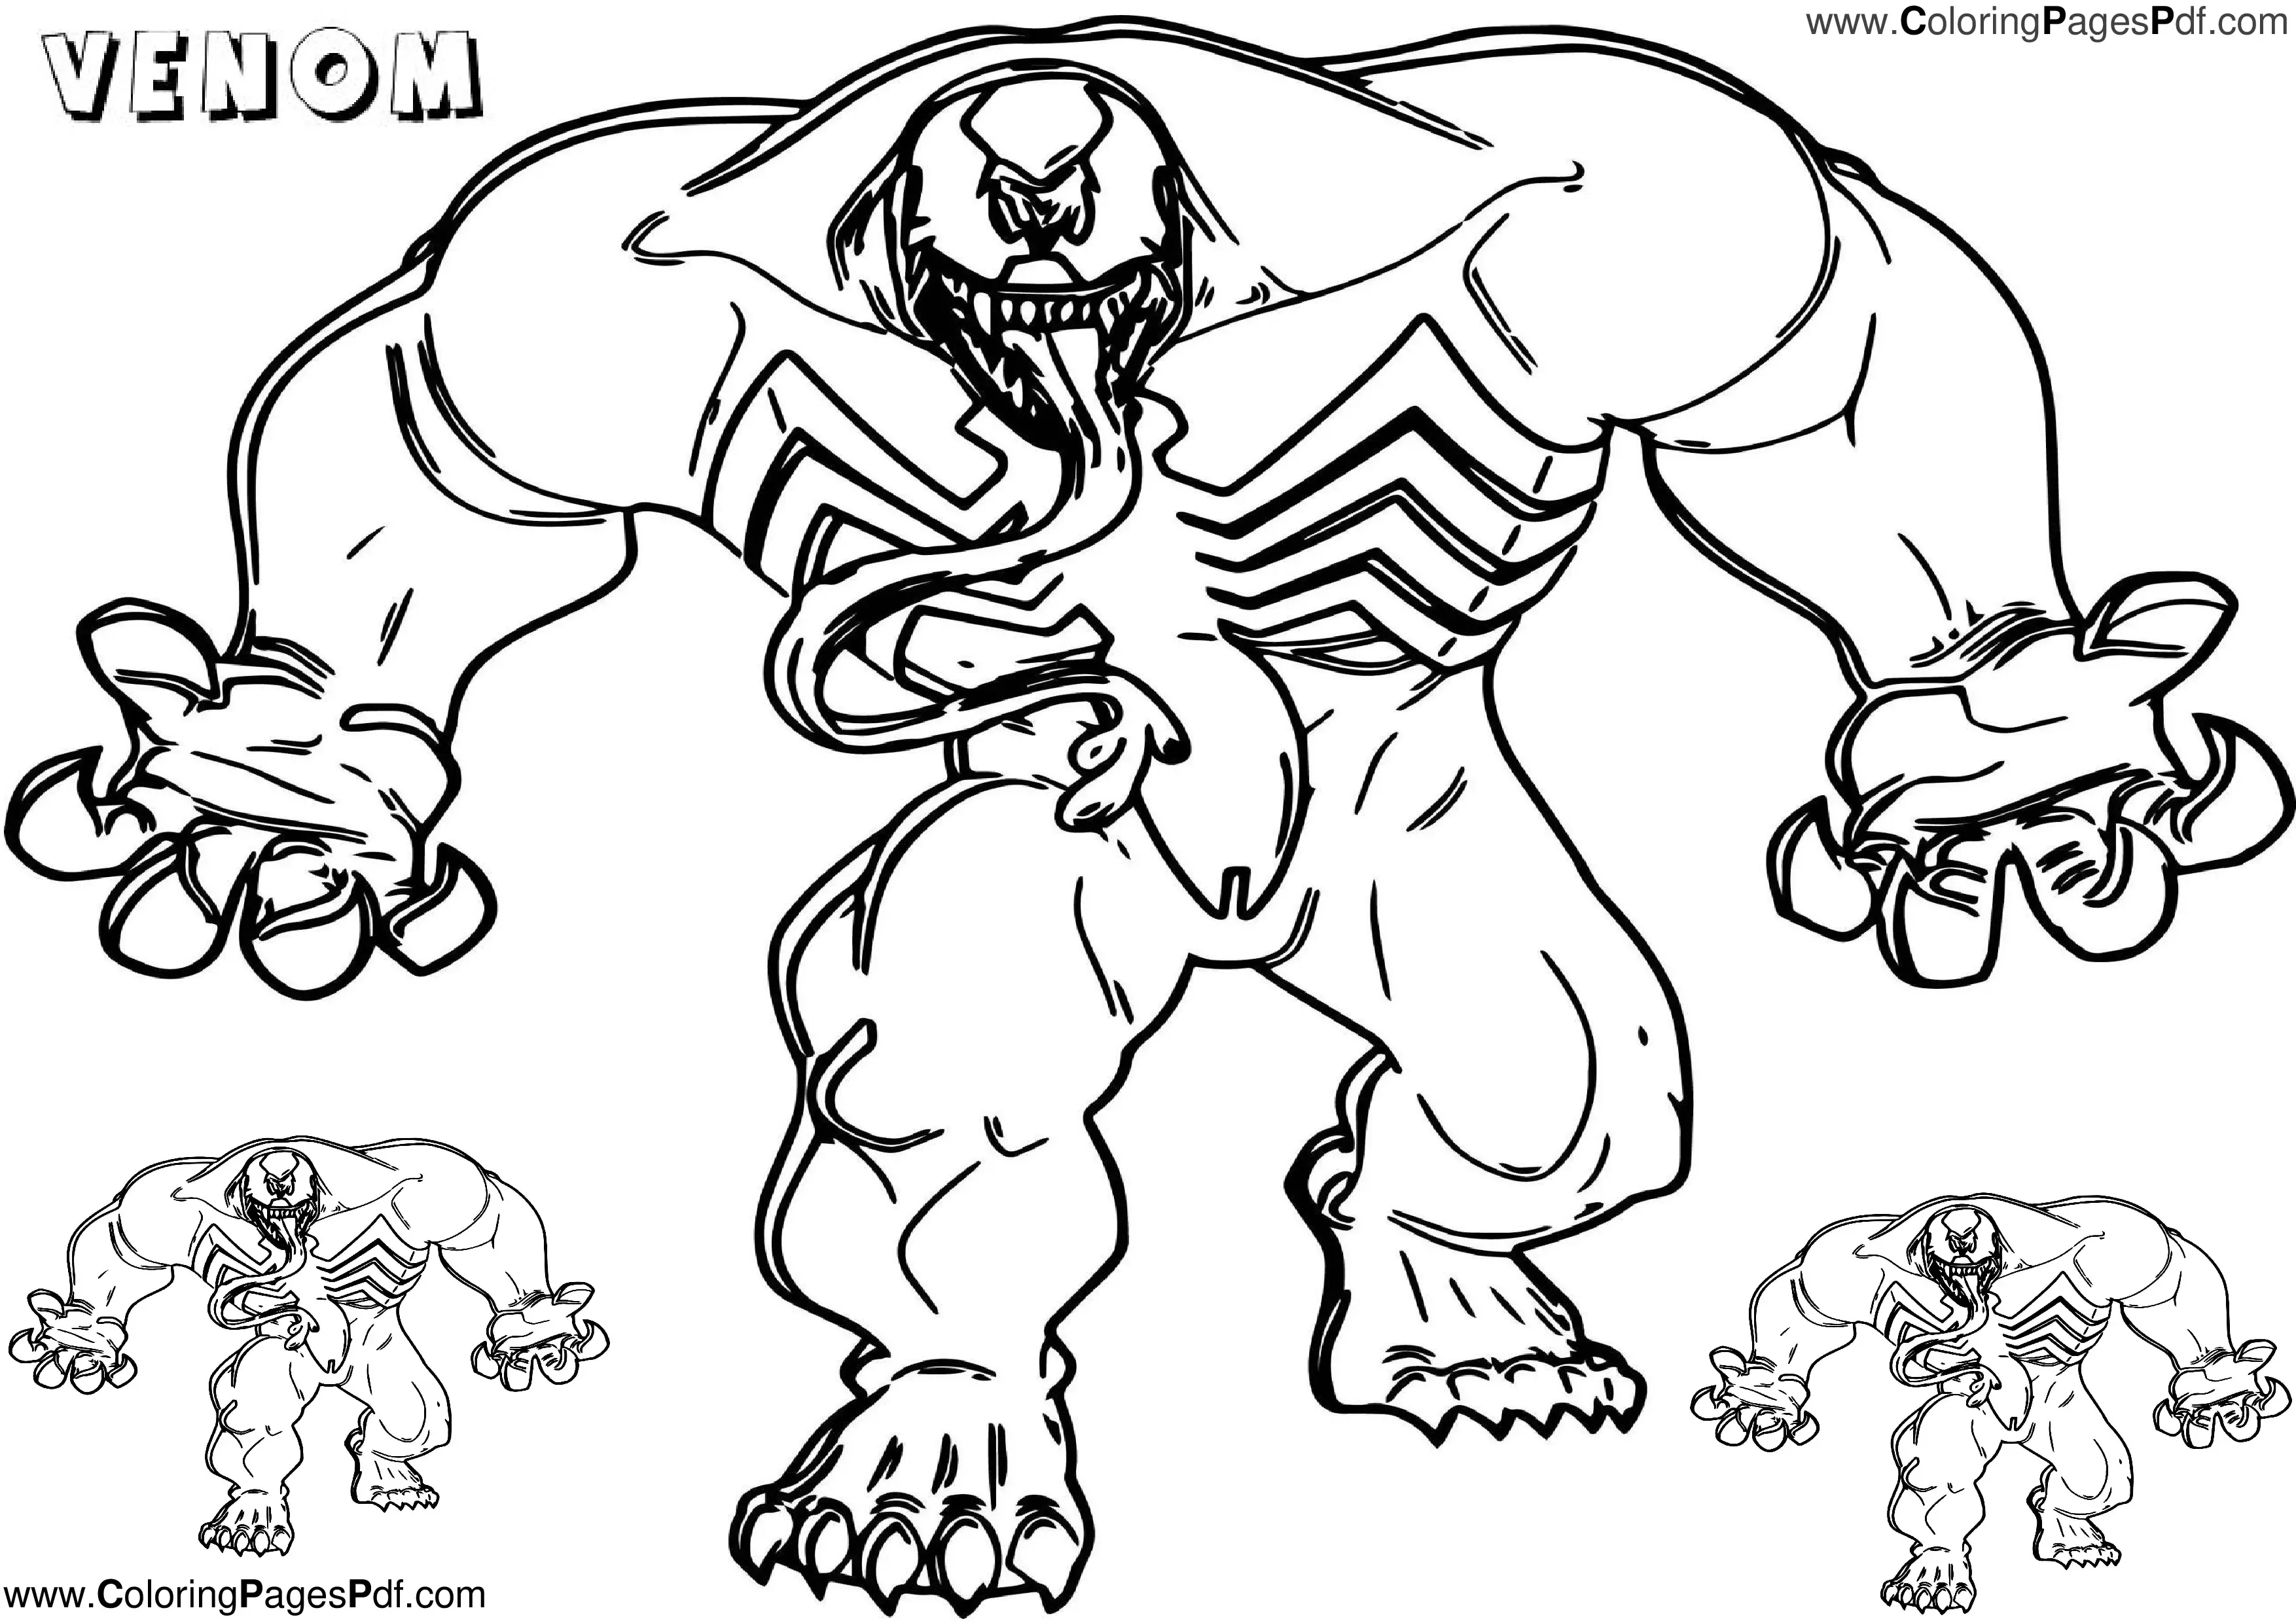 Venom coloring pages